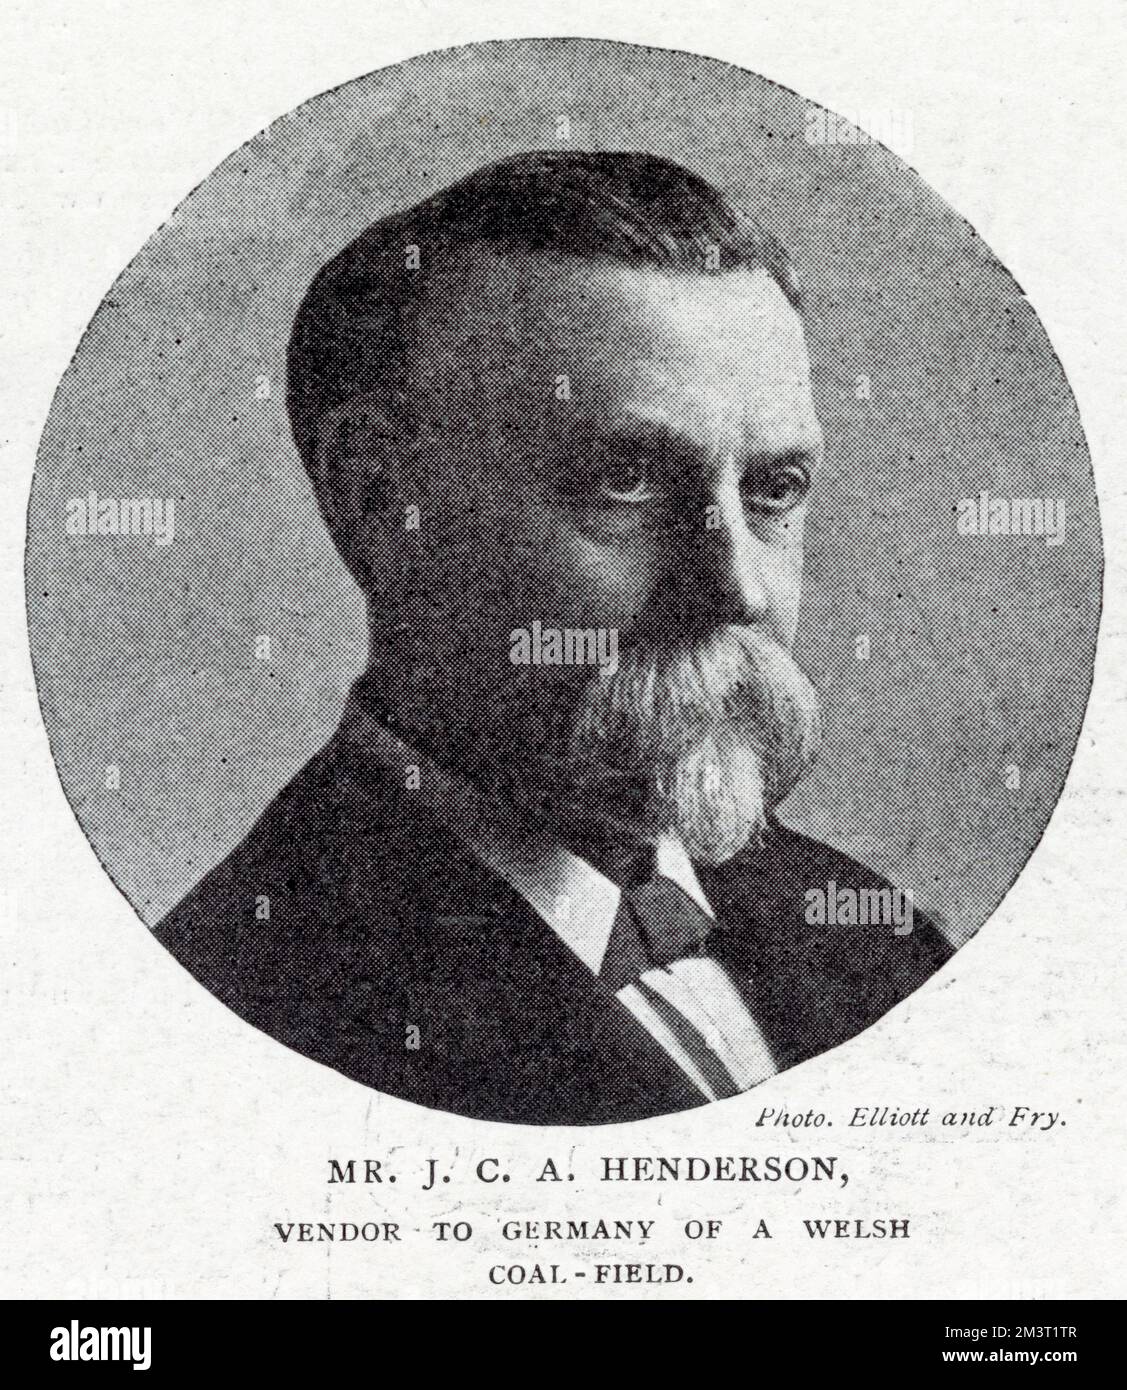 Herr John Crosbie Aitken Henderson - Lieferant eines walisischen Kohlefeldes nach Deutschland. Stockfoto